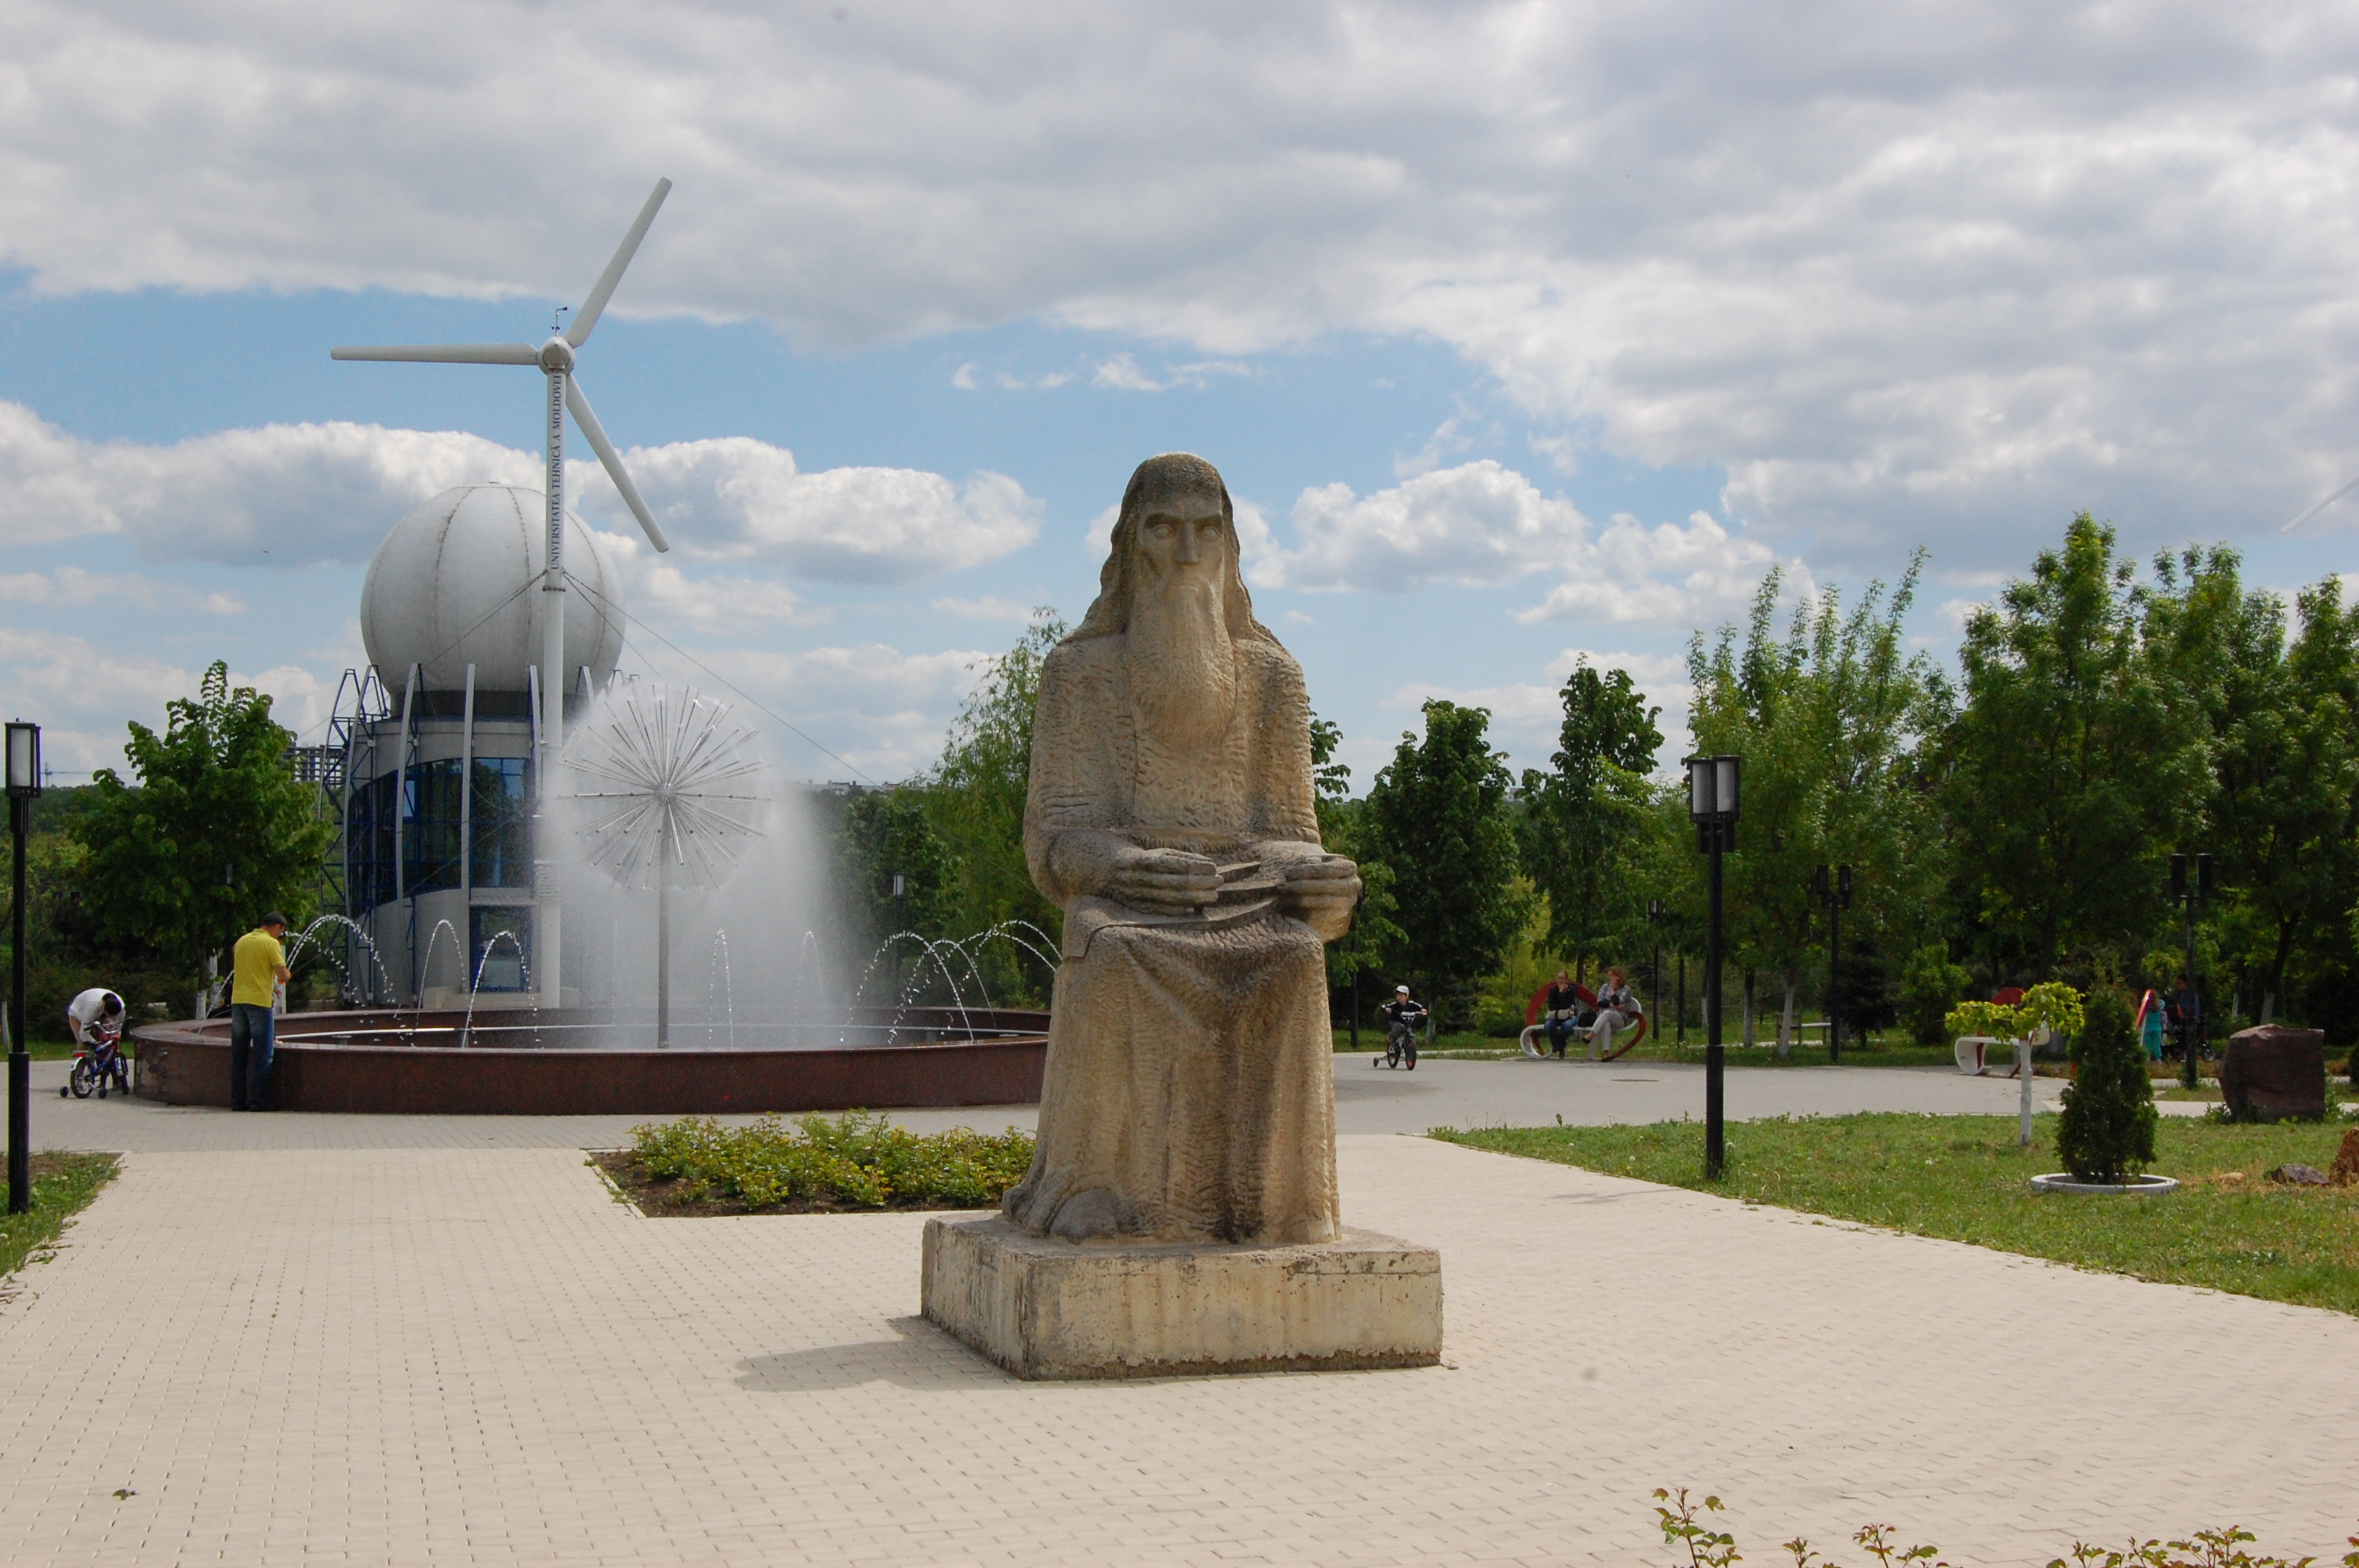 MD, Orasul Chişinău, Sculptura Invatatorul din parcul UTM